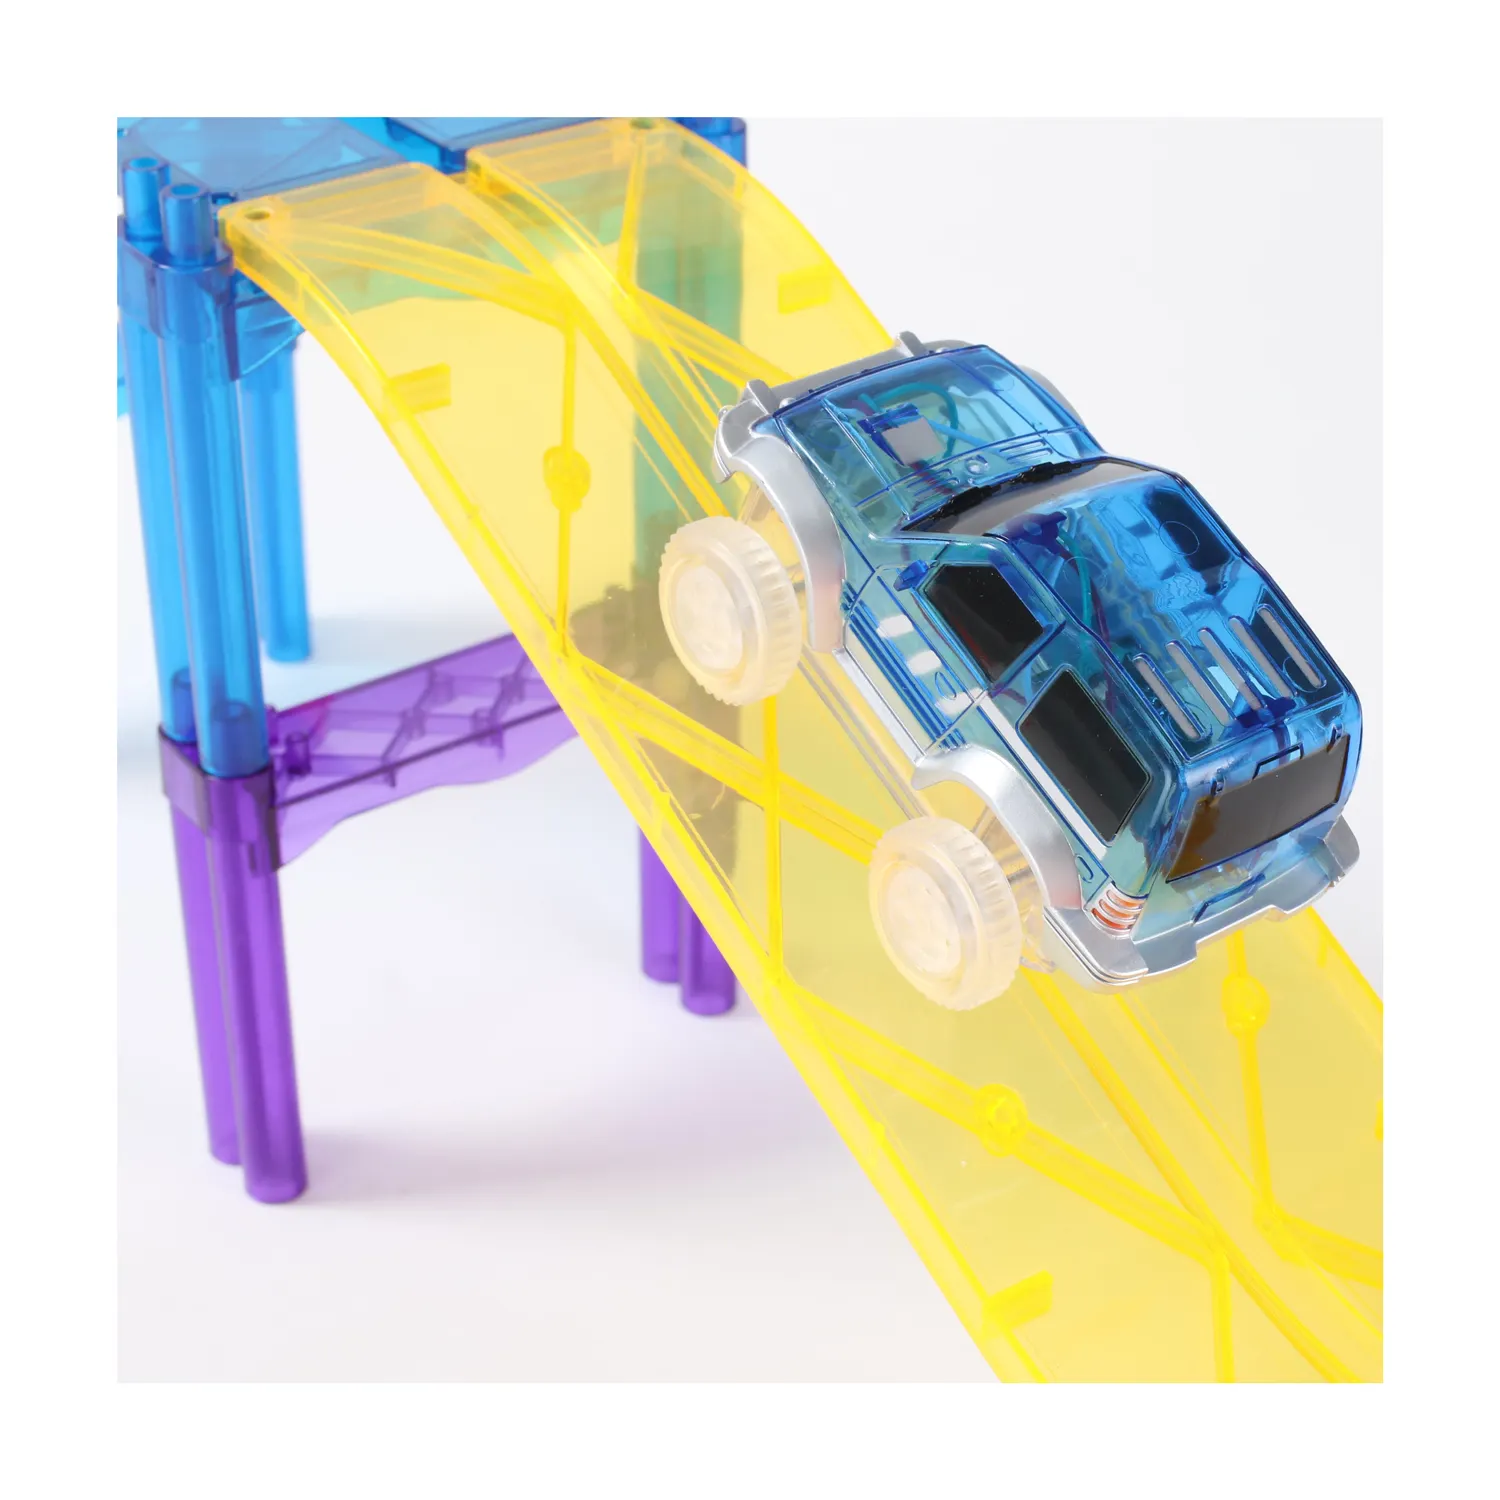 Stem Magnetic Plastic Building Block giocattoli Car Race Track marmo Run Tile auto elettrica giocattolo per bambini